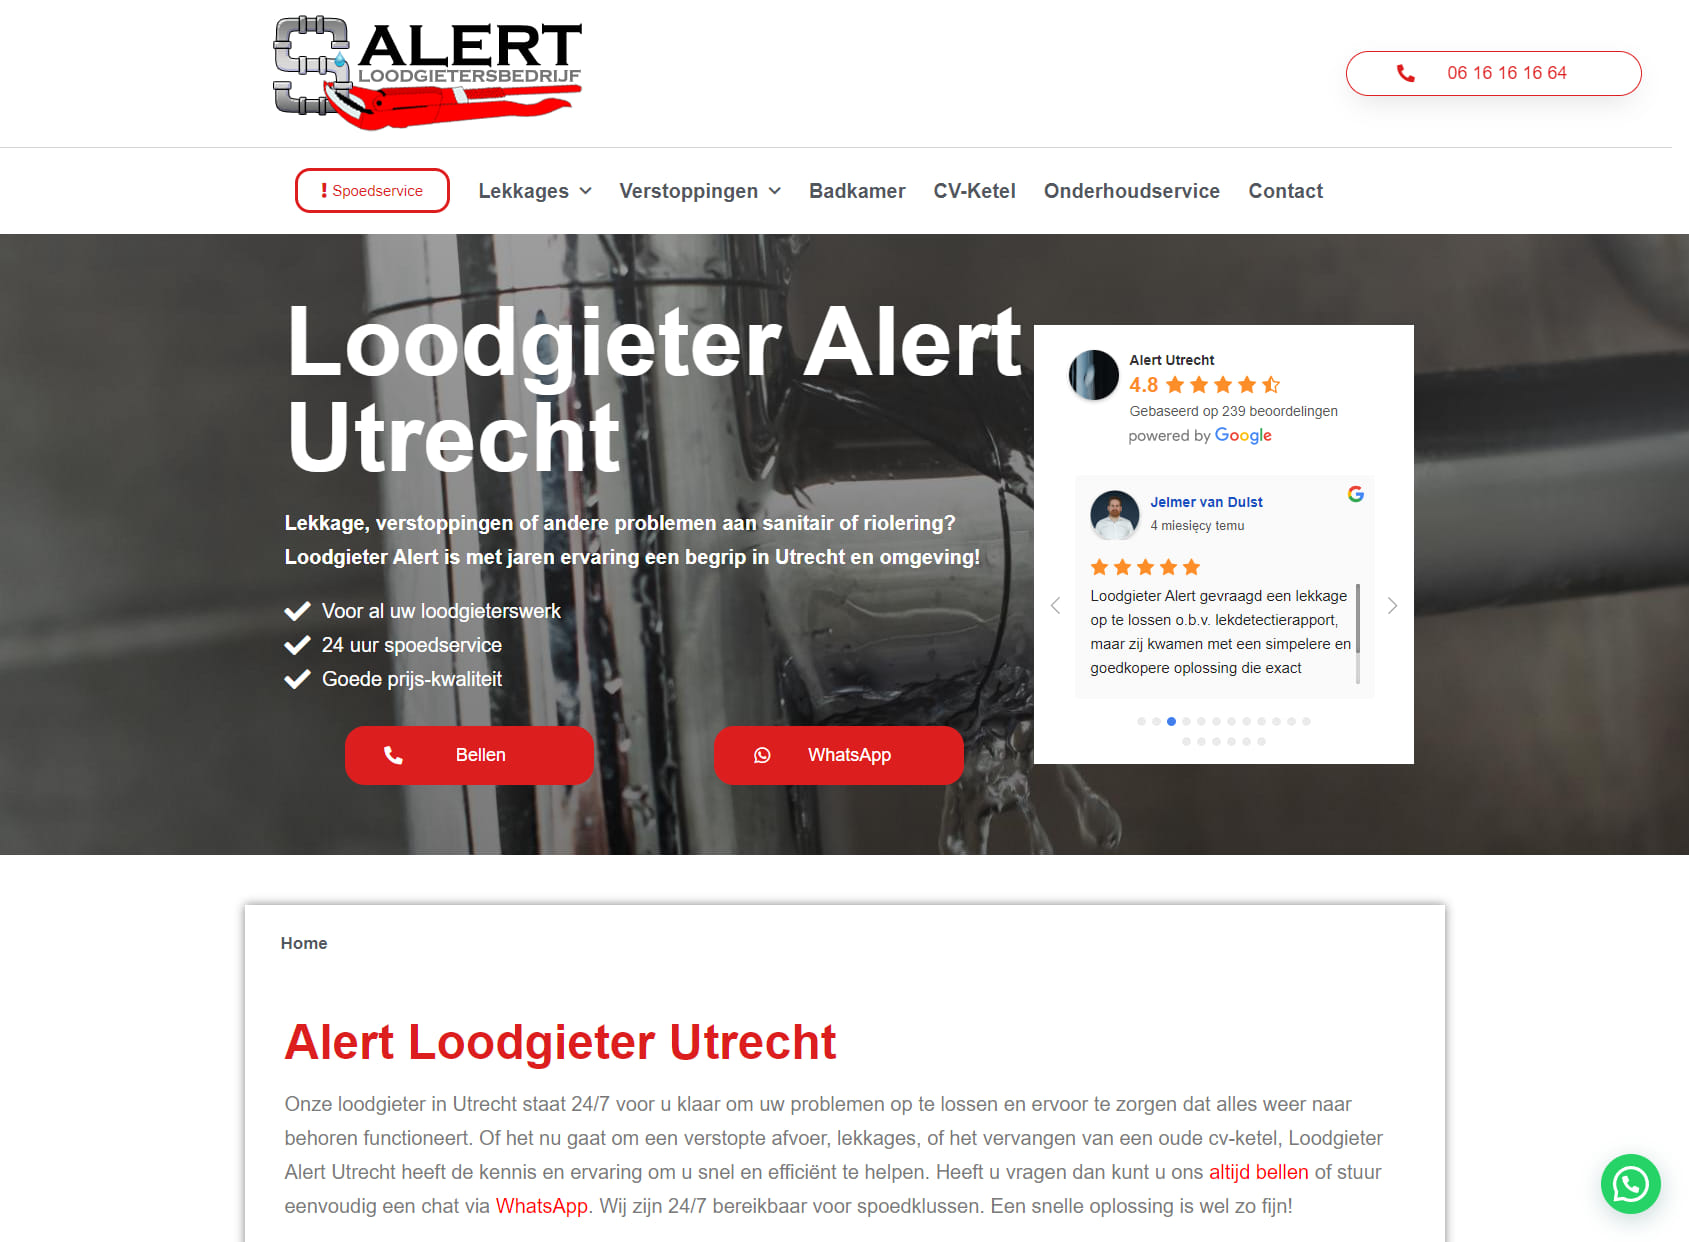 Alert Utrecht